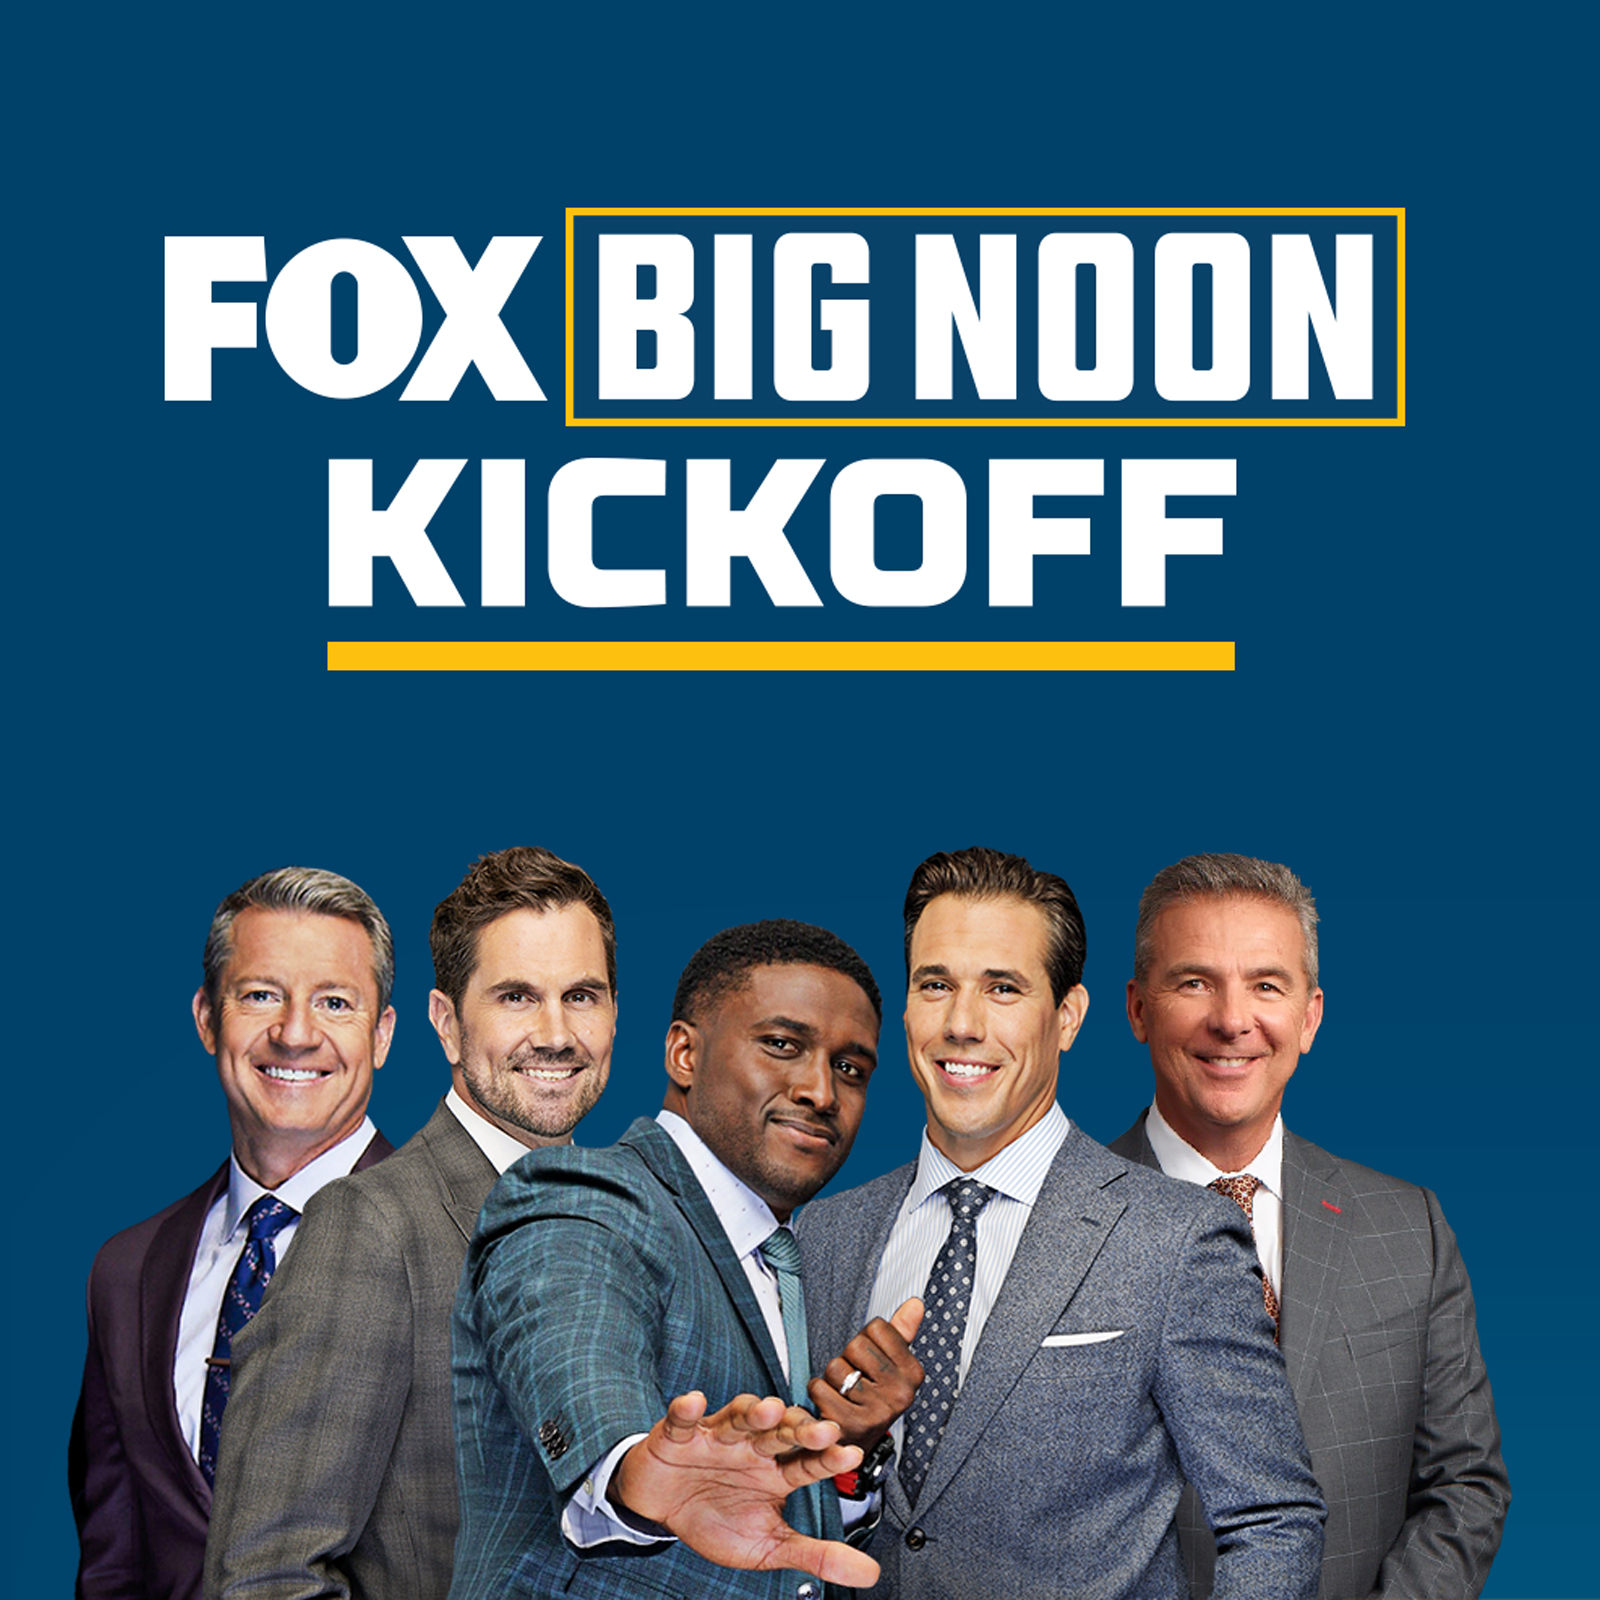 image of hosts and "big noon kickoff"